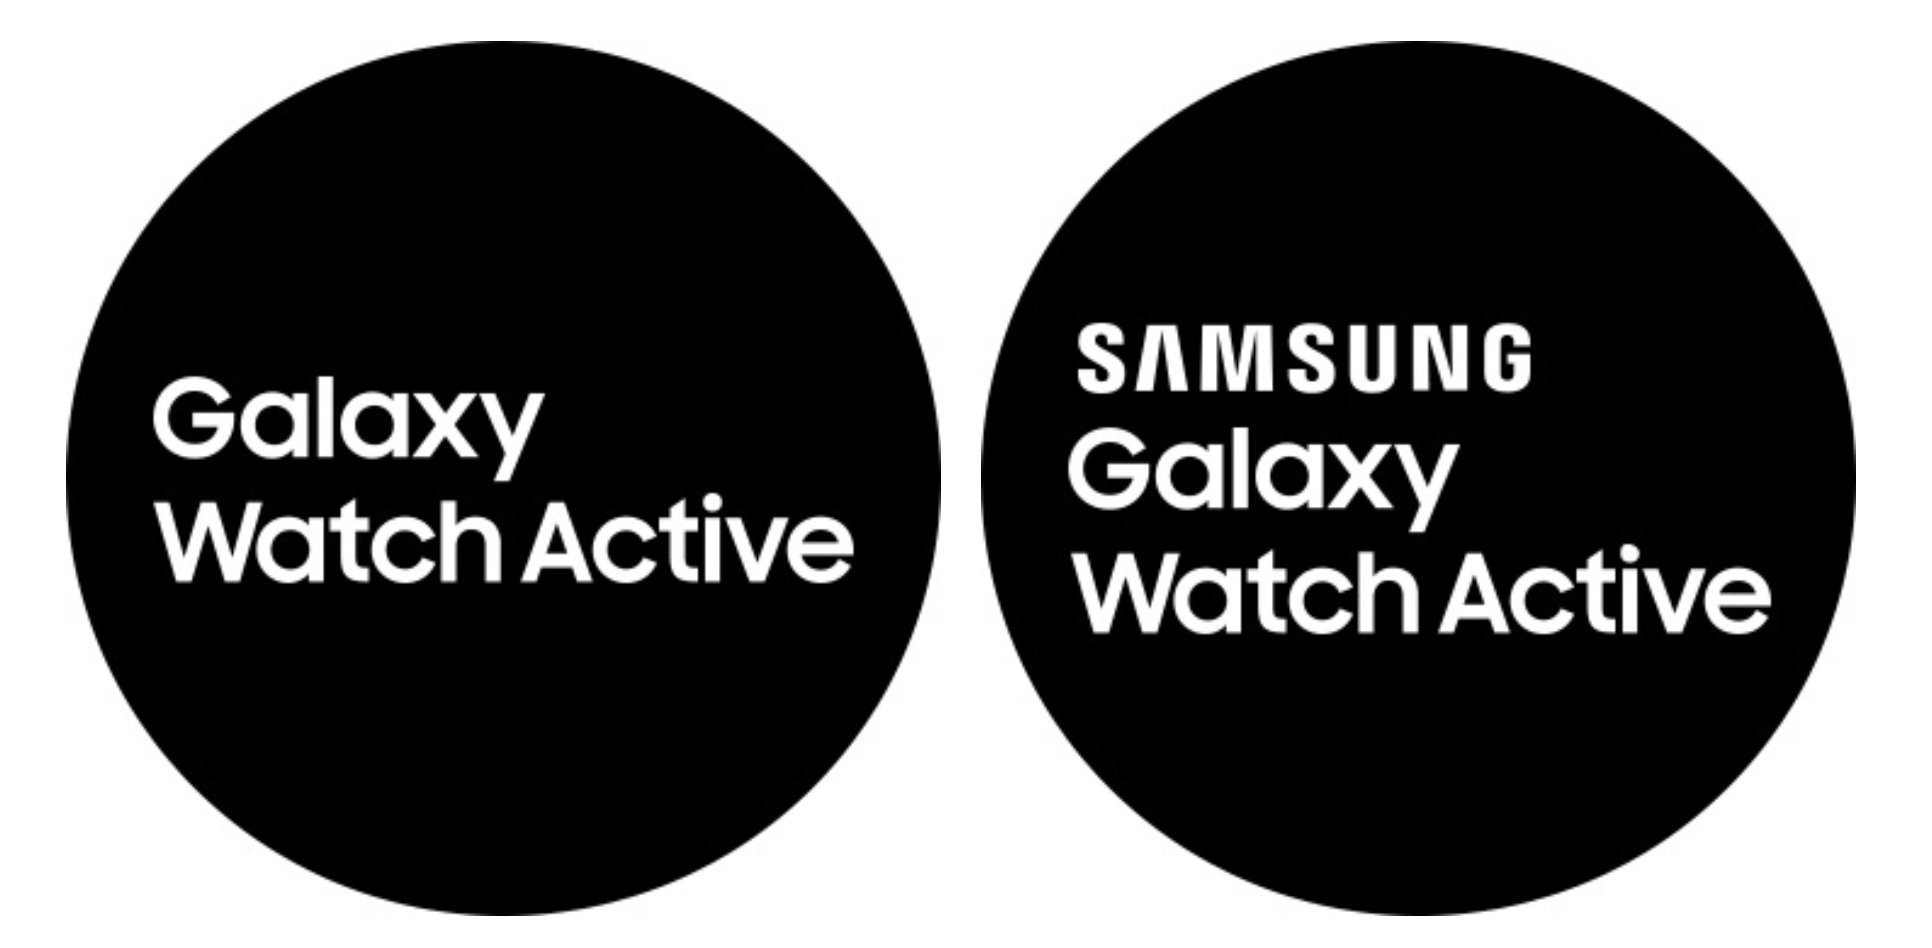 Galaxy    Active Watch станет следующим оригинальным названием умных часов Samsung. 2 "width =" 1932 "height =" 948